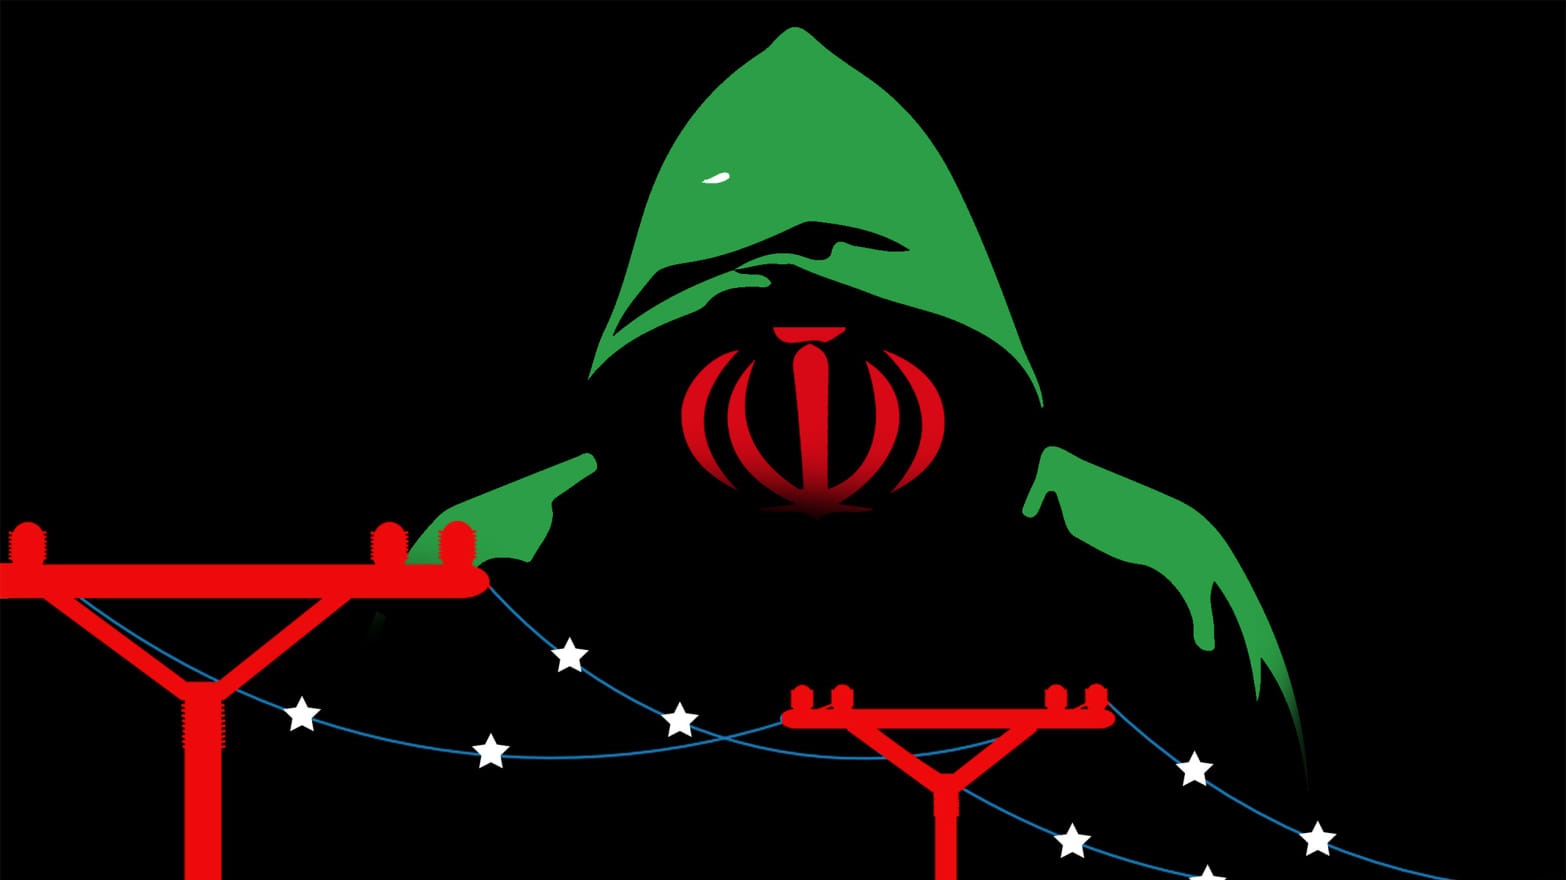 تایید فرمانده بسیج: رژیم نیم میلیون سایبری در راستای اهداف رژیم در فضای مجازی، در استخدام دارد